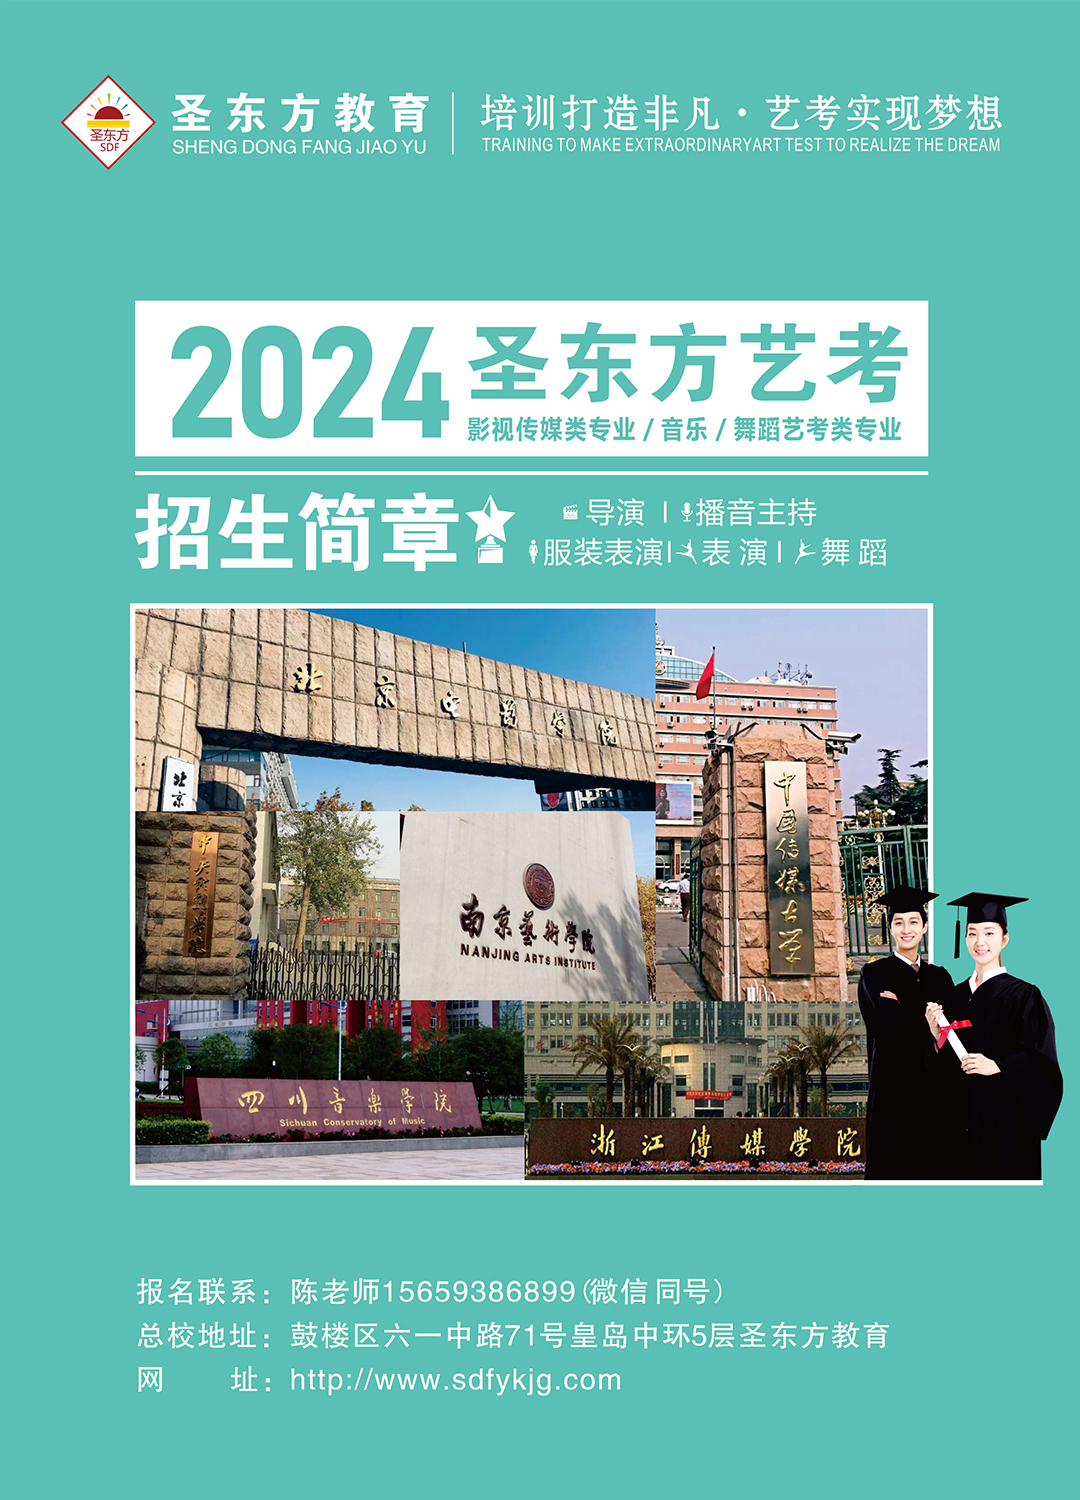 2024年福州圣东方艺术教育培训学校招生简介